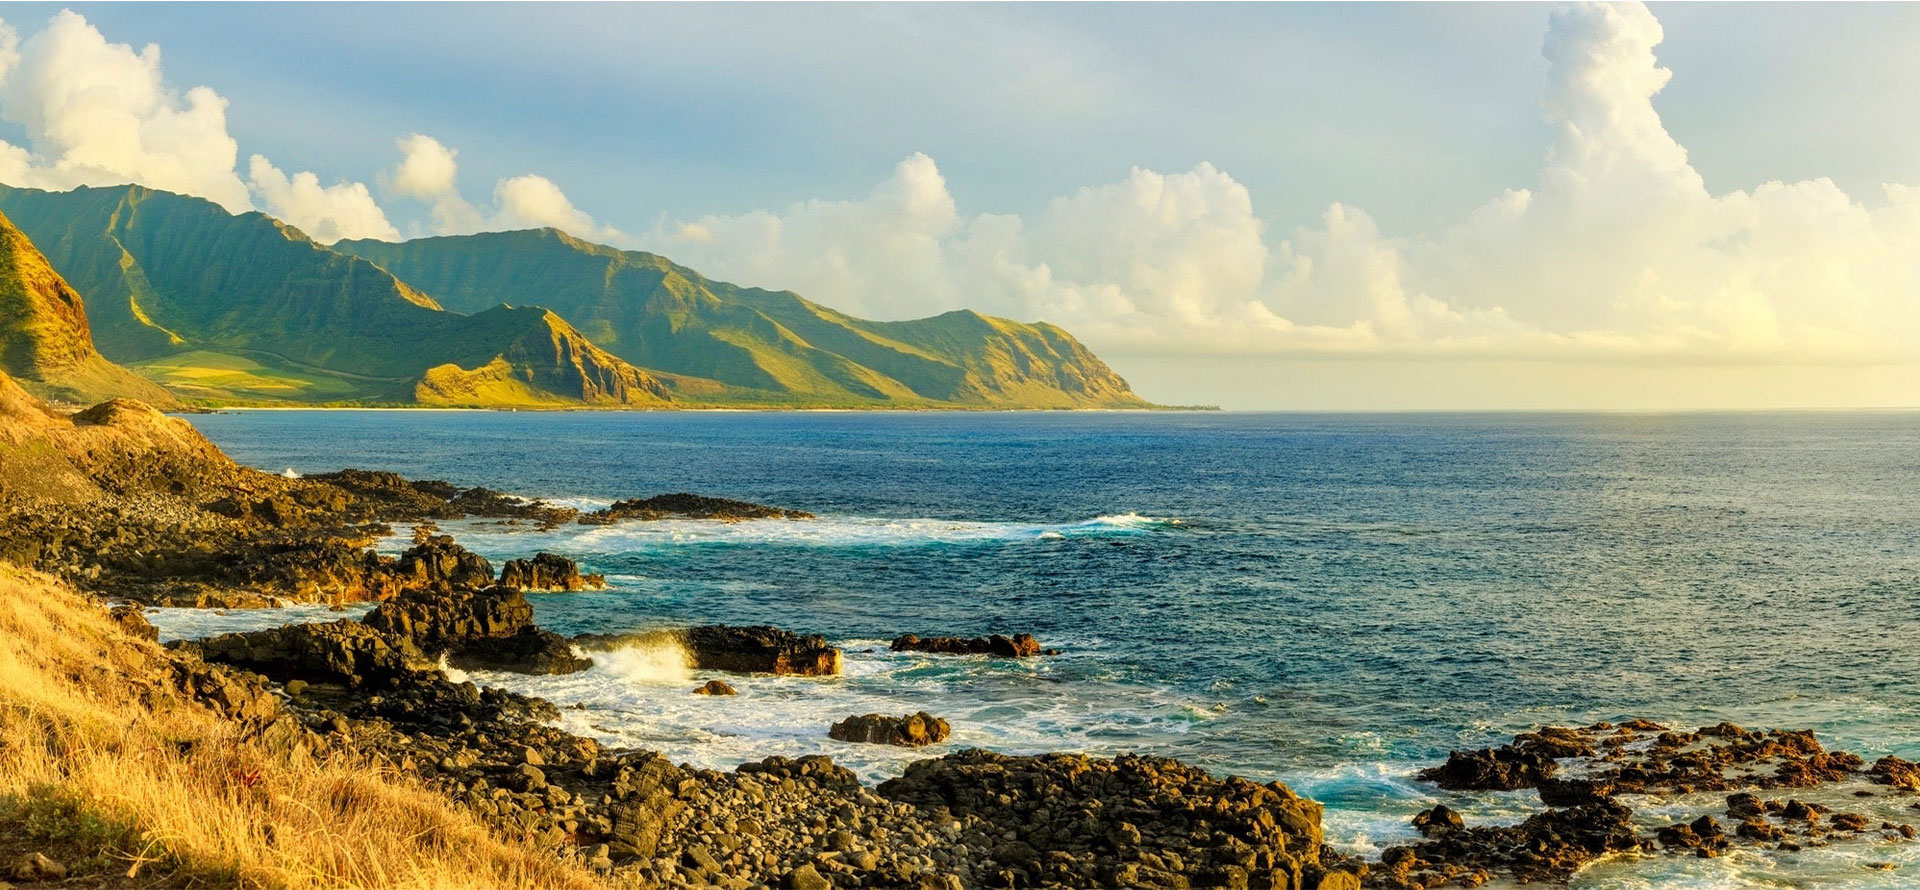 Ocean view of Oahu.